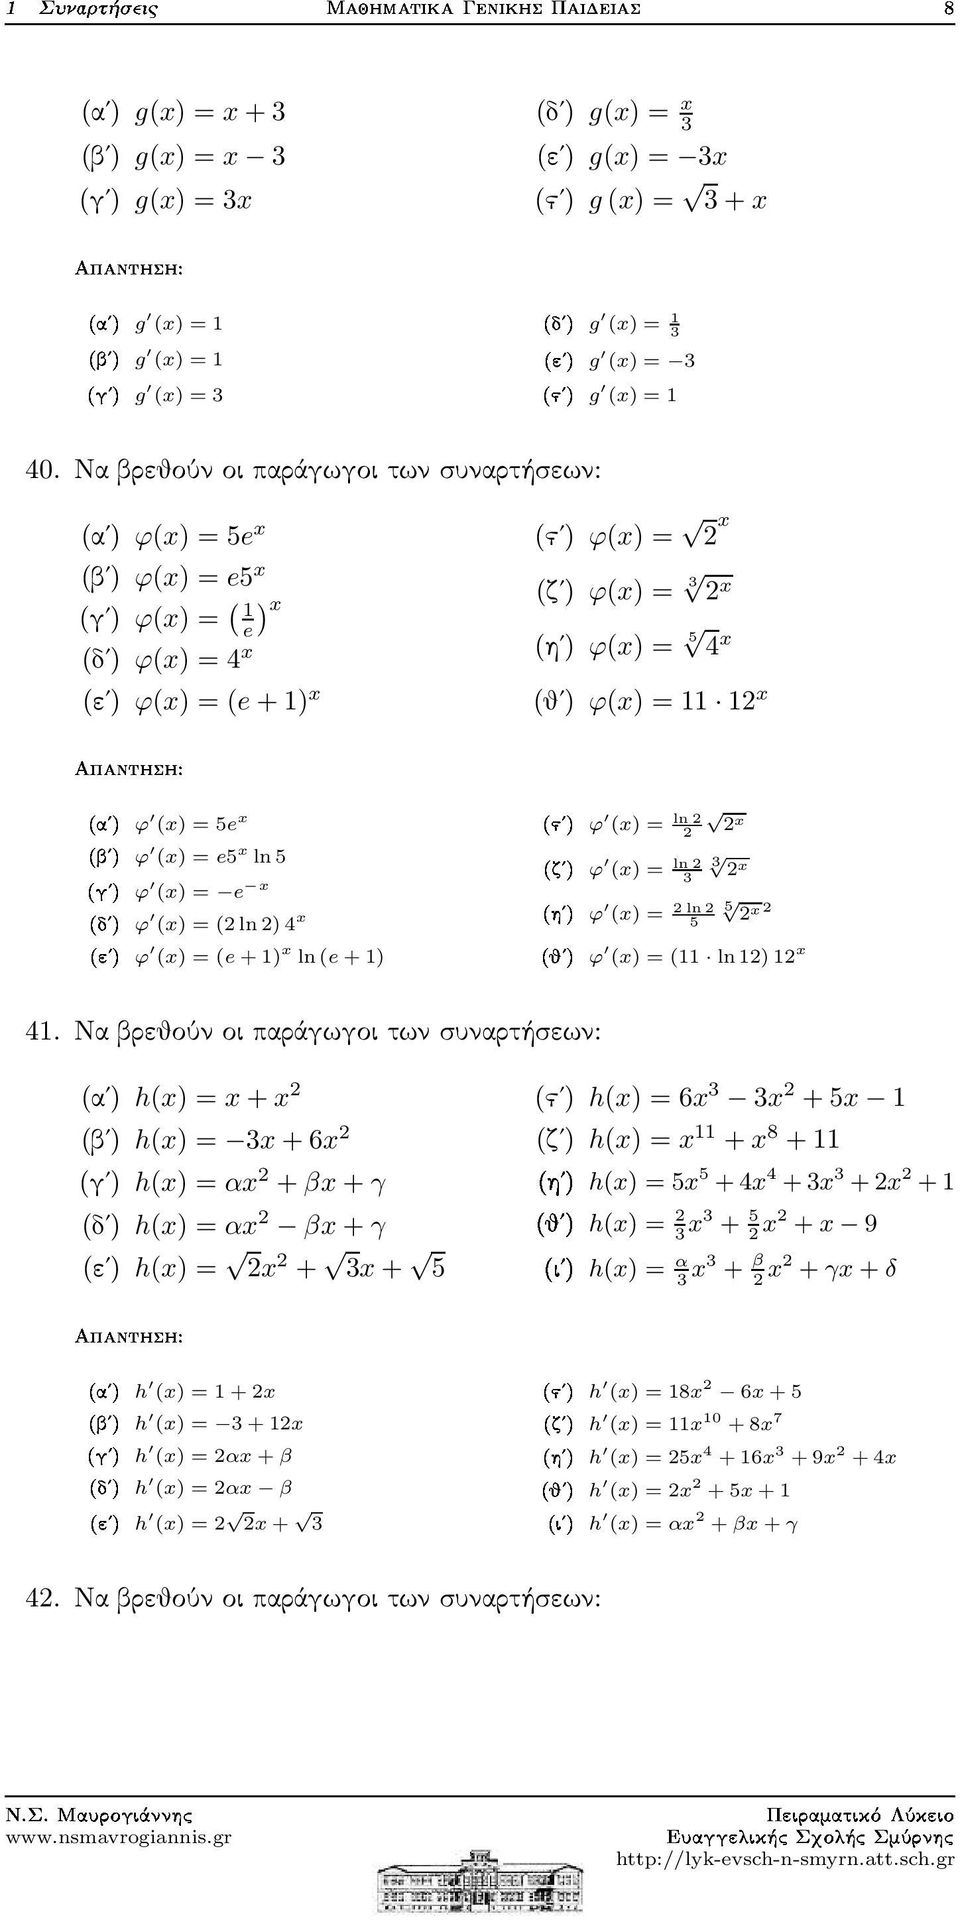 (x) = (e+1) x ln(e + 1) (ϛʹ) ϕ(x) = x (ζʹ) ϕ(x) = 3 x (ηʹ) ϕ(x) = 5 4 x (θʹ) ϕ(x) = 11 1 x µϕ Þµϕ µϕ µϕ (x) = ln ln x (x) = 3 ln3 x (x) = 5 5 x (x) = (11 ln1)1 x 41.